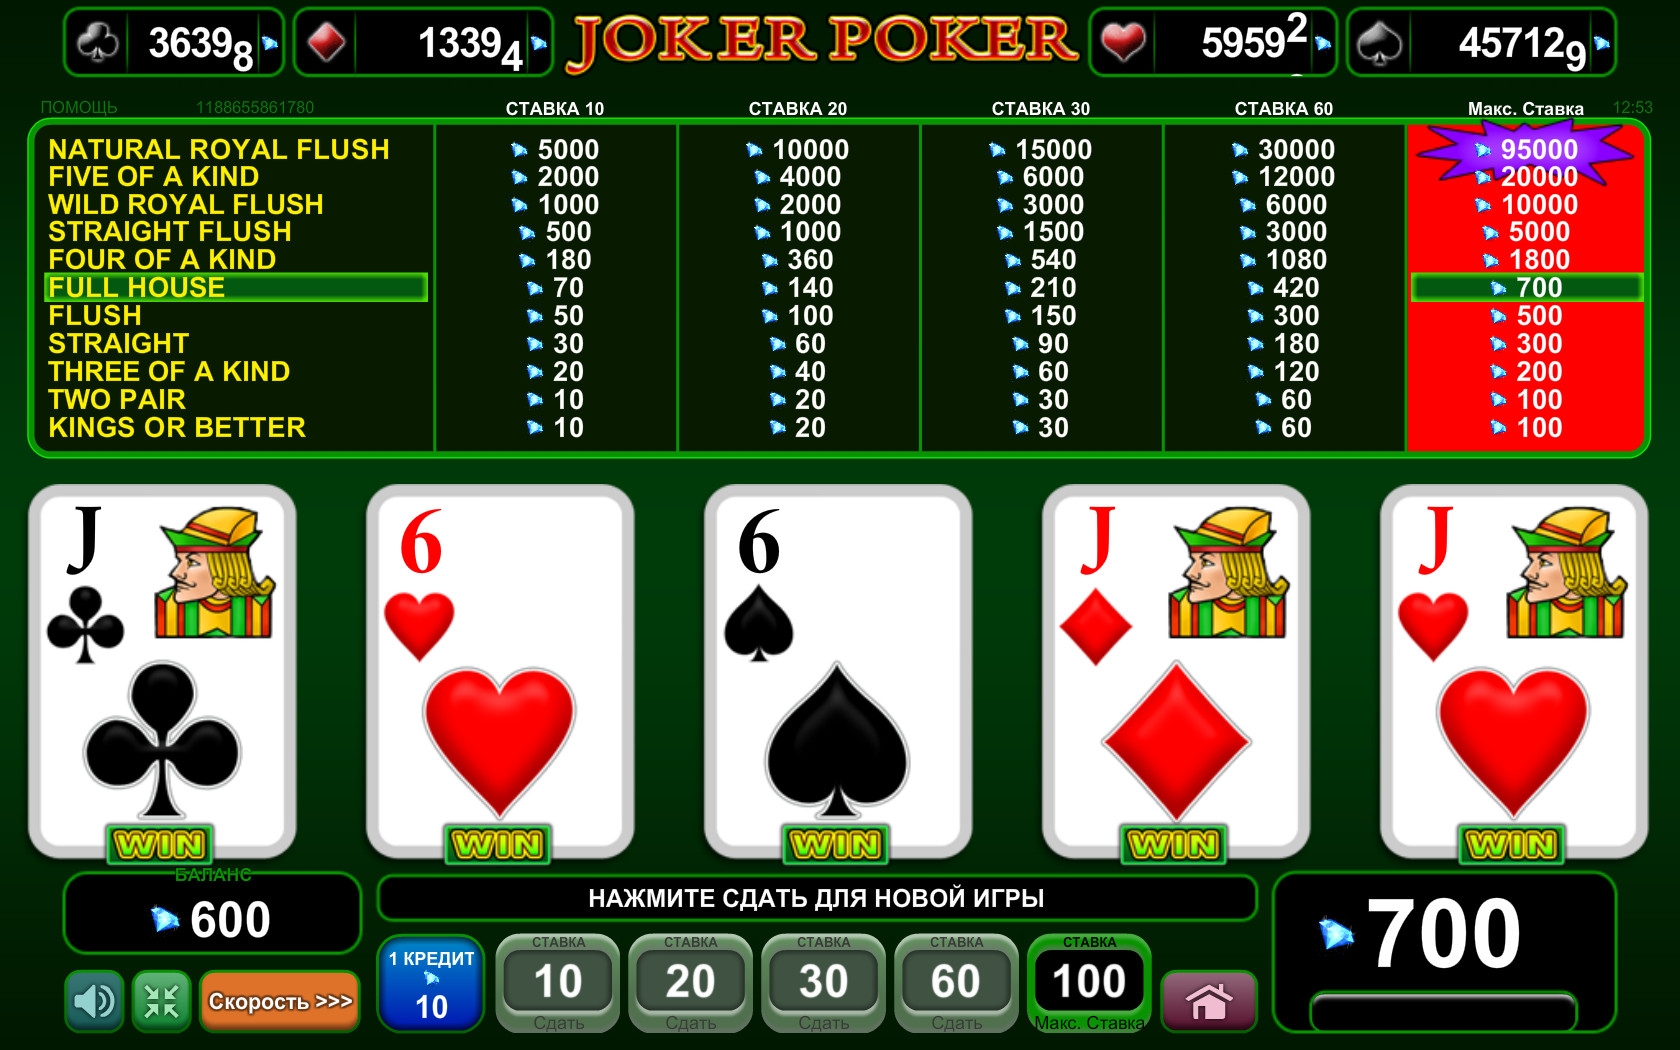 Комбинации в покере с Джокером